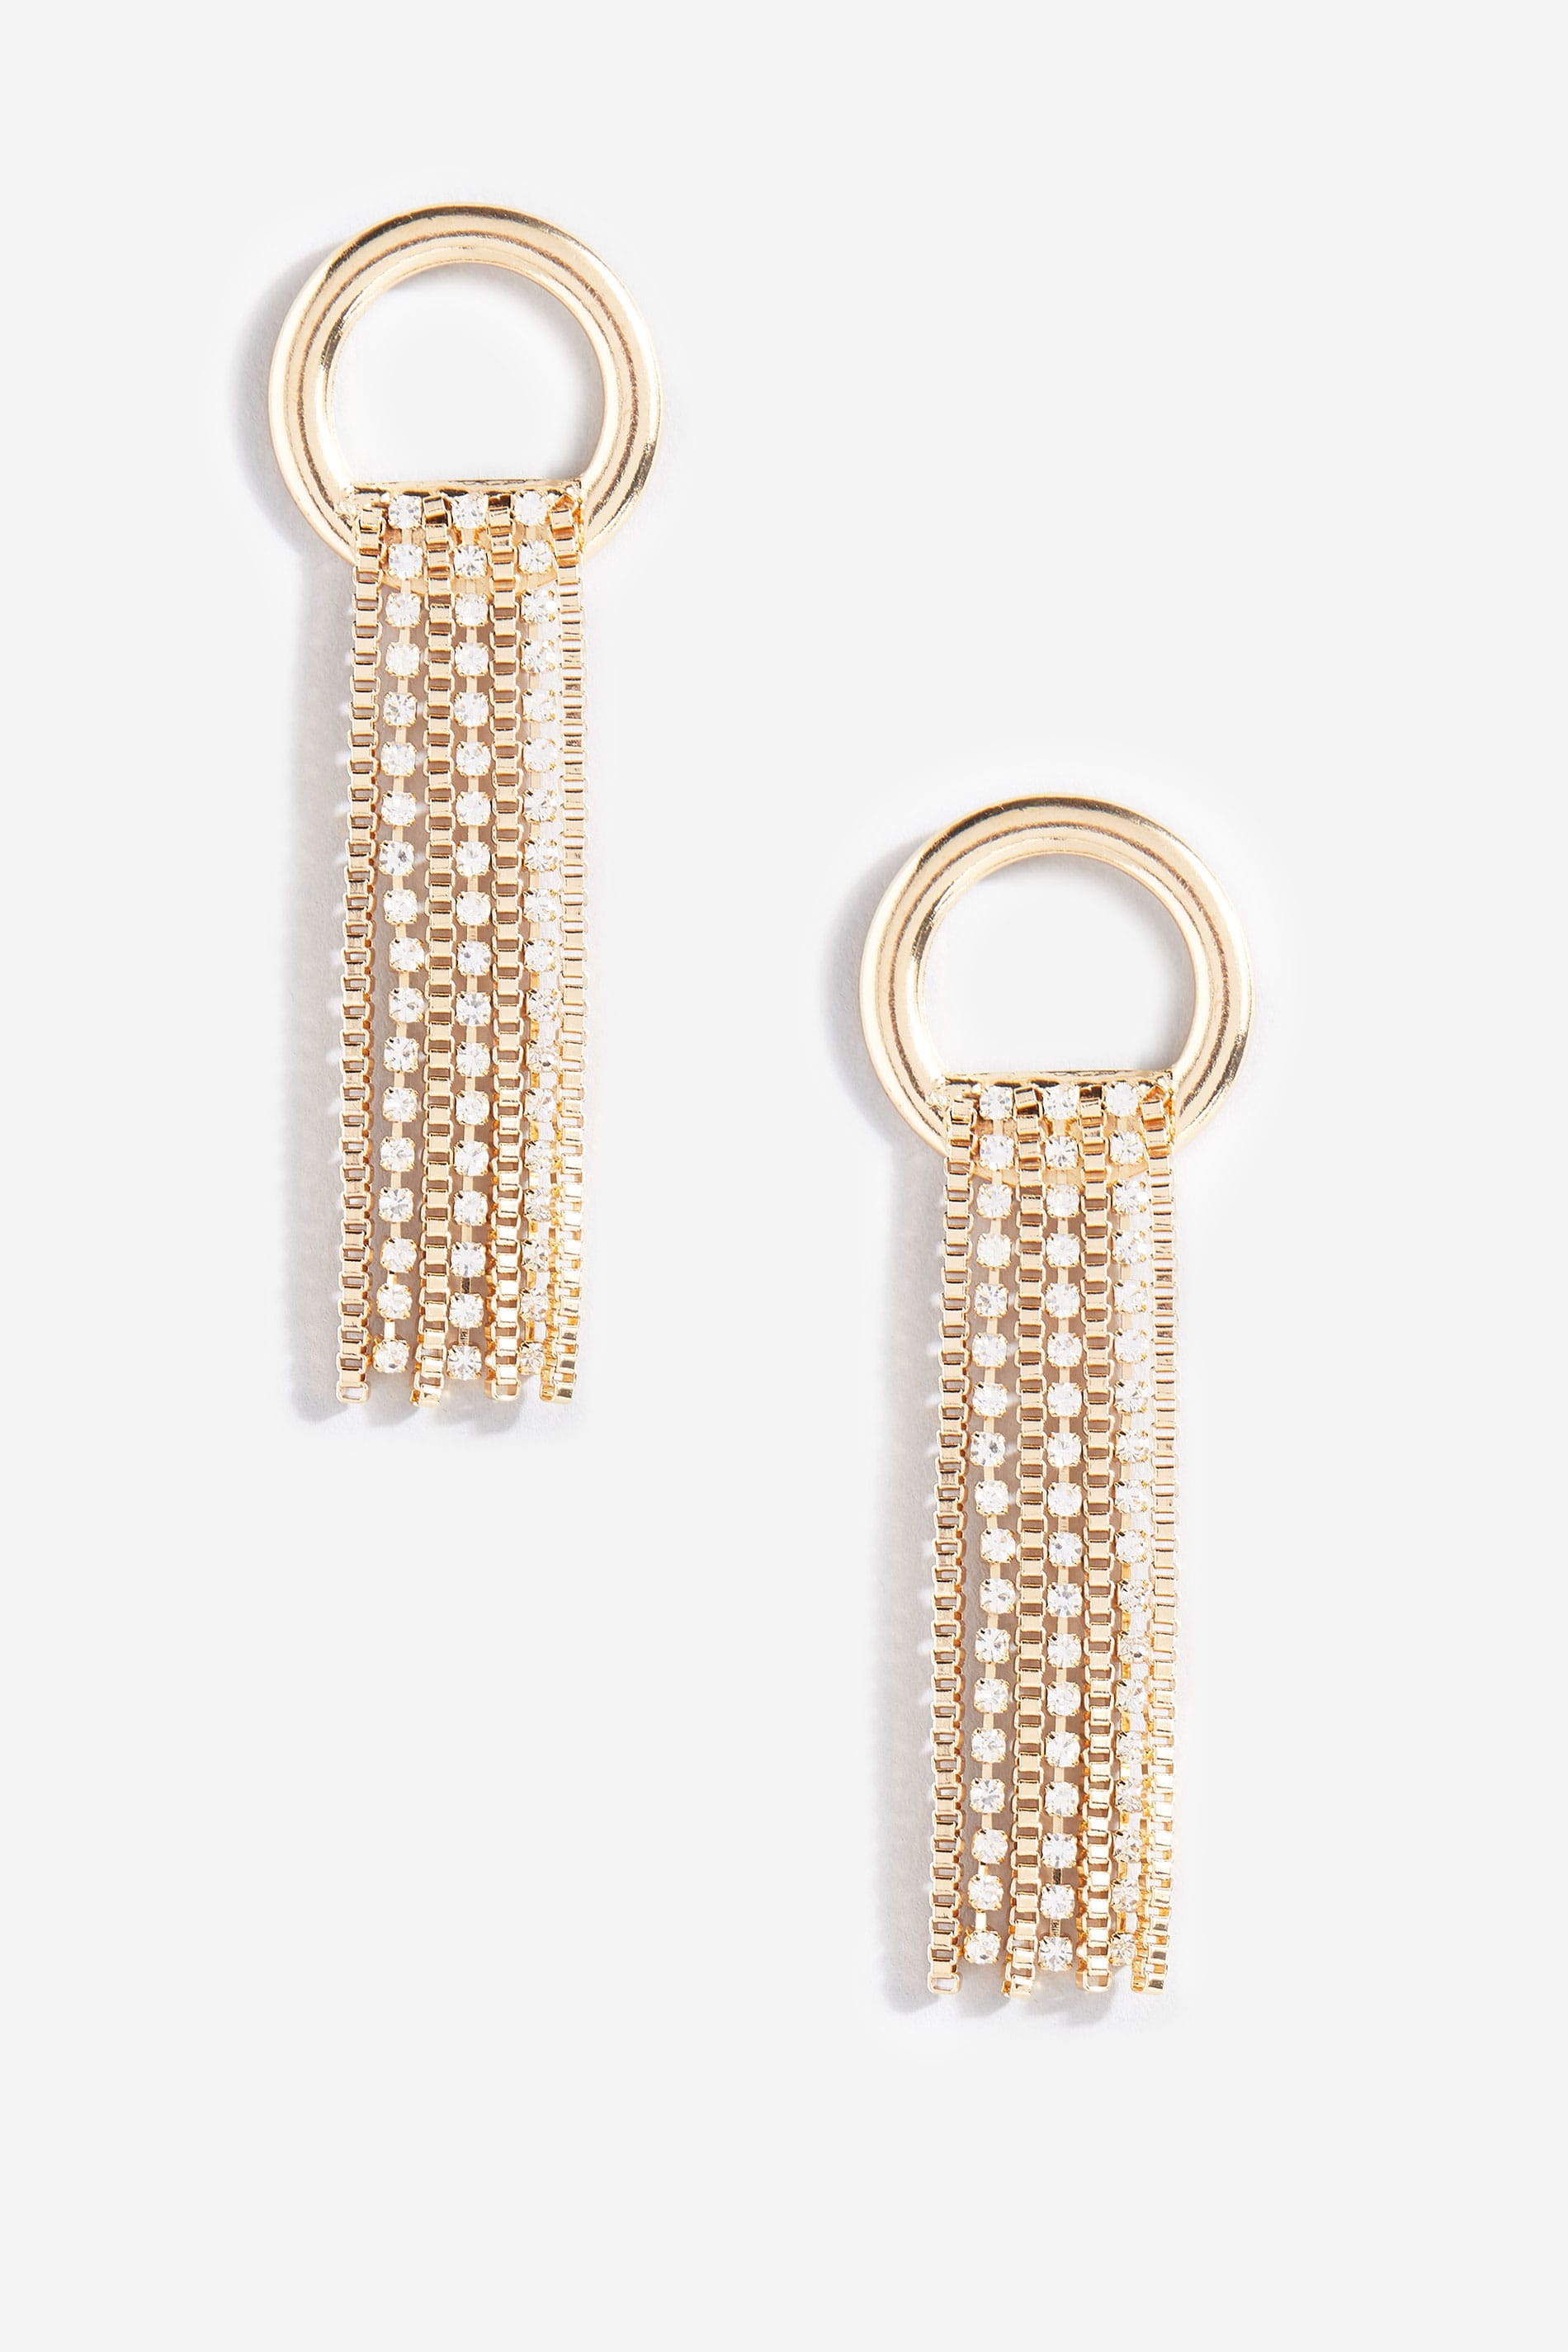 Gold Loop Diamante Tassel Earrings_1a82.jpg